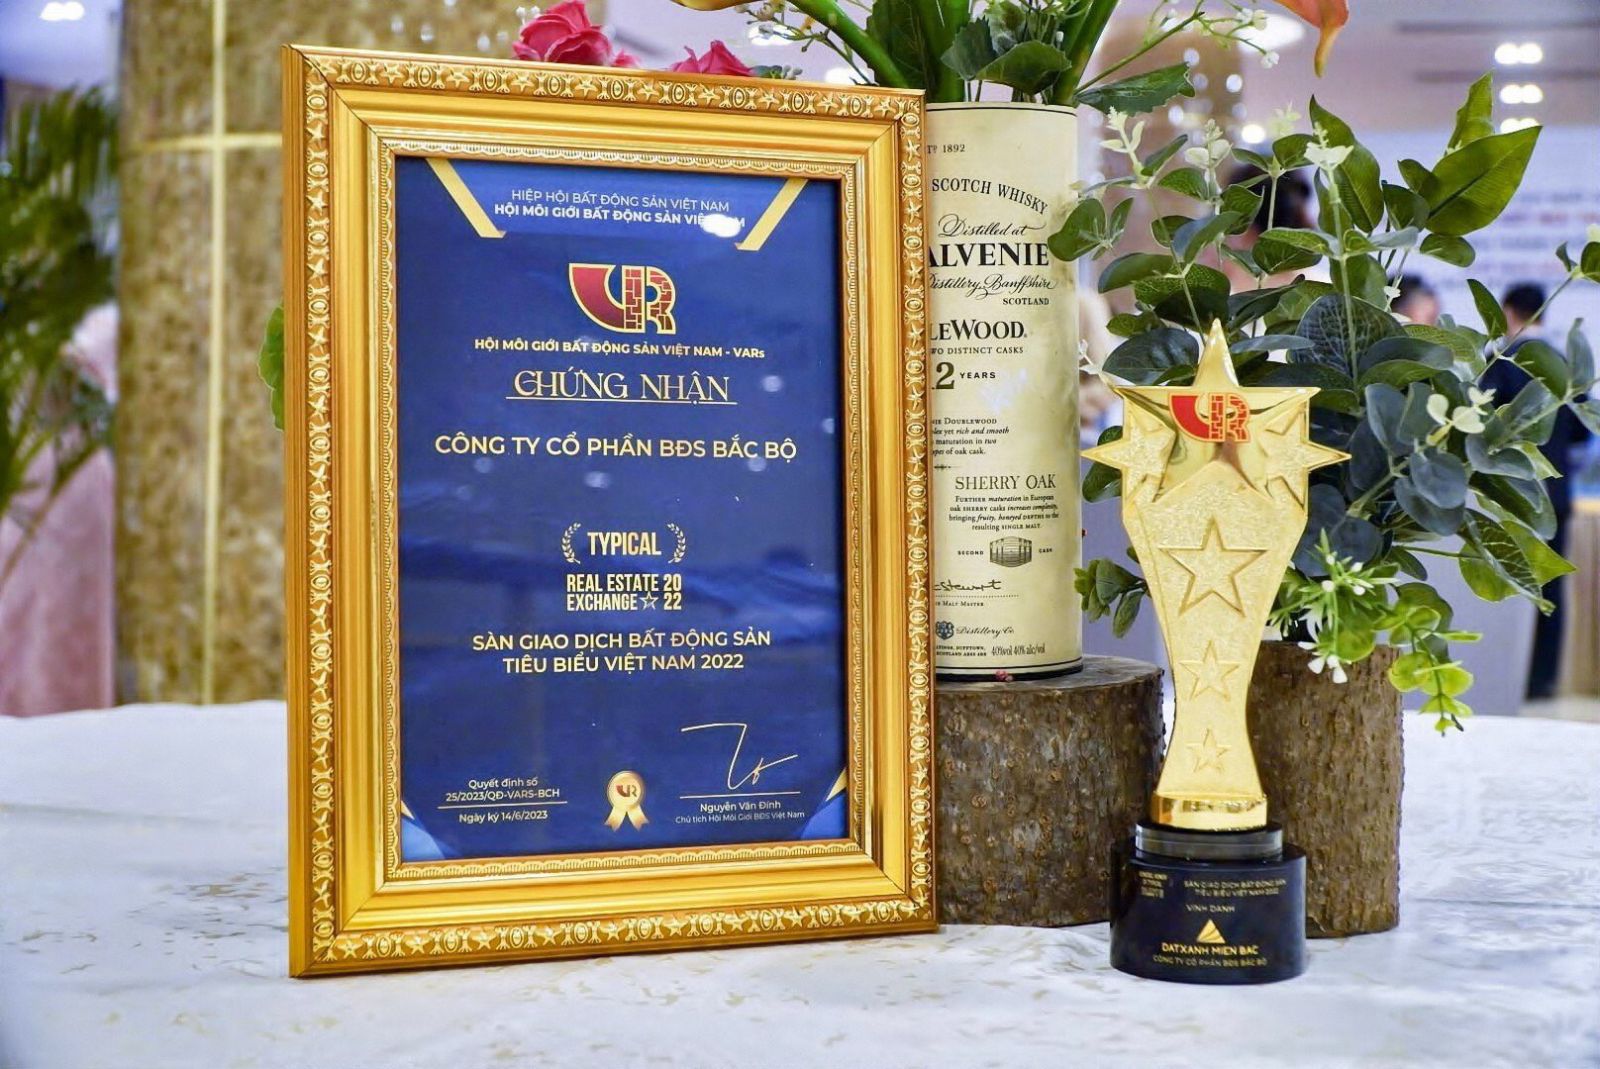 Giải thưởng danh giá của Hiệp hội Bất động sản Việt Nam